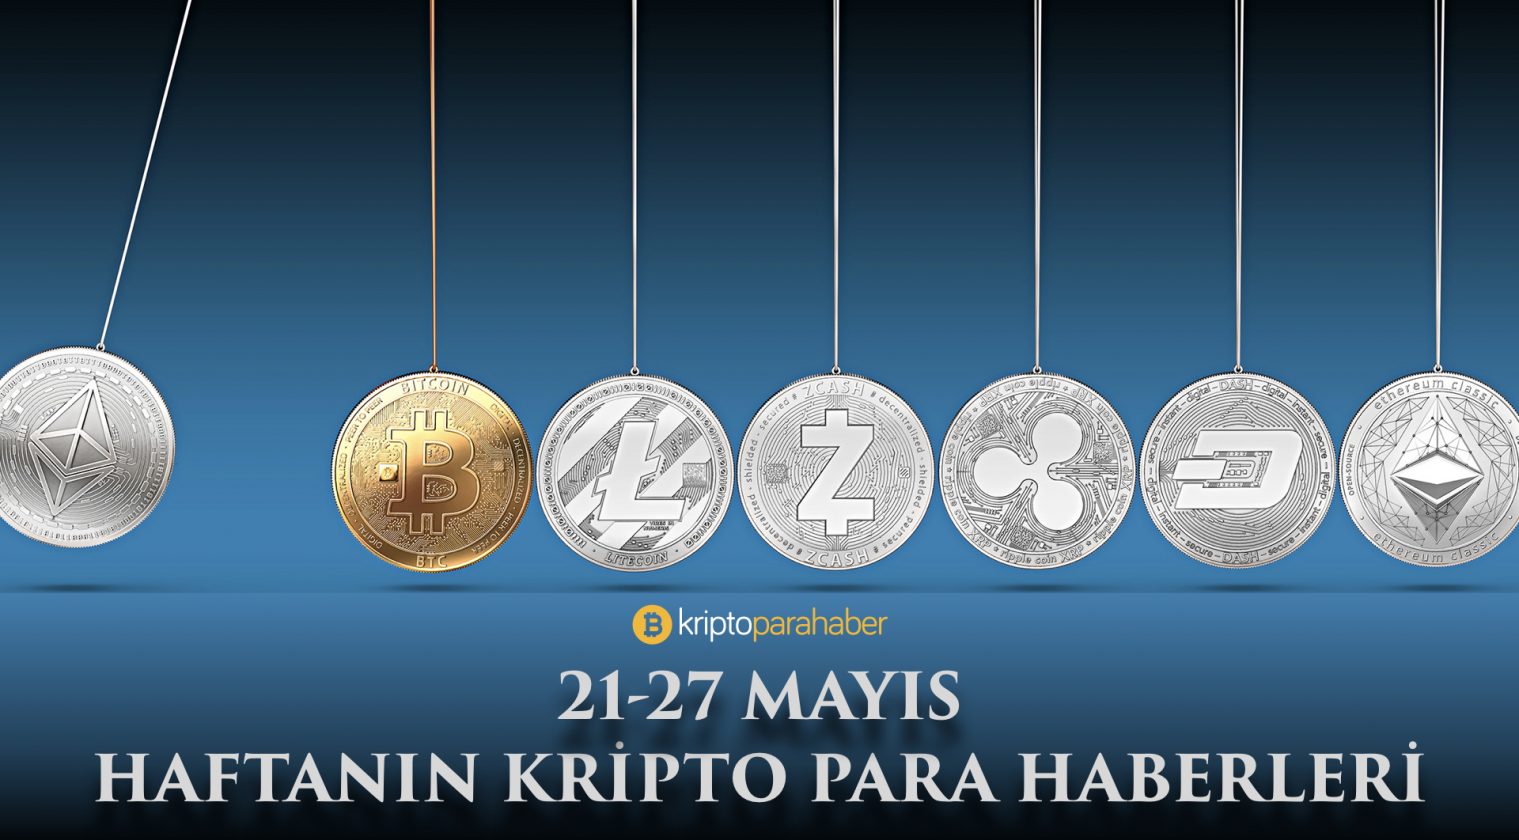 21-27 Mayıs: Haftanın kripto para haberleri